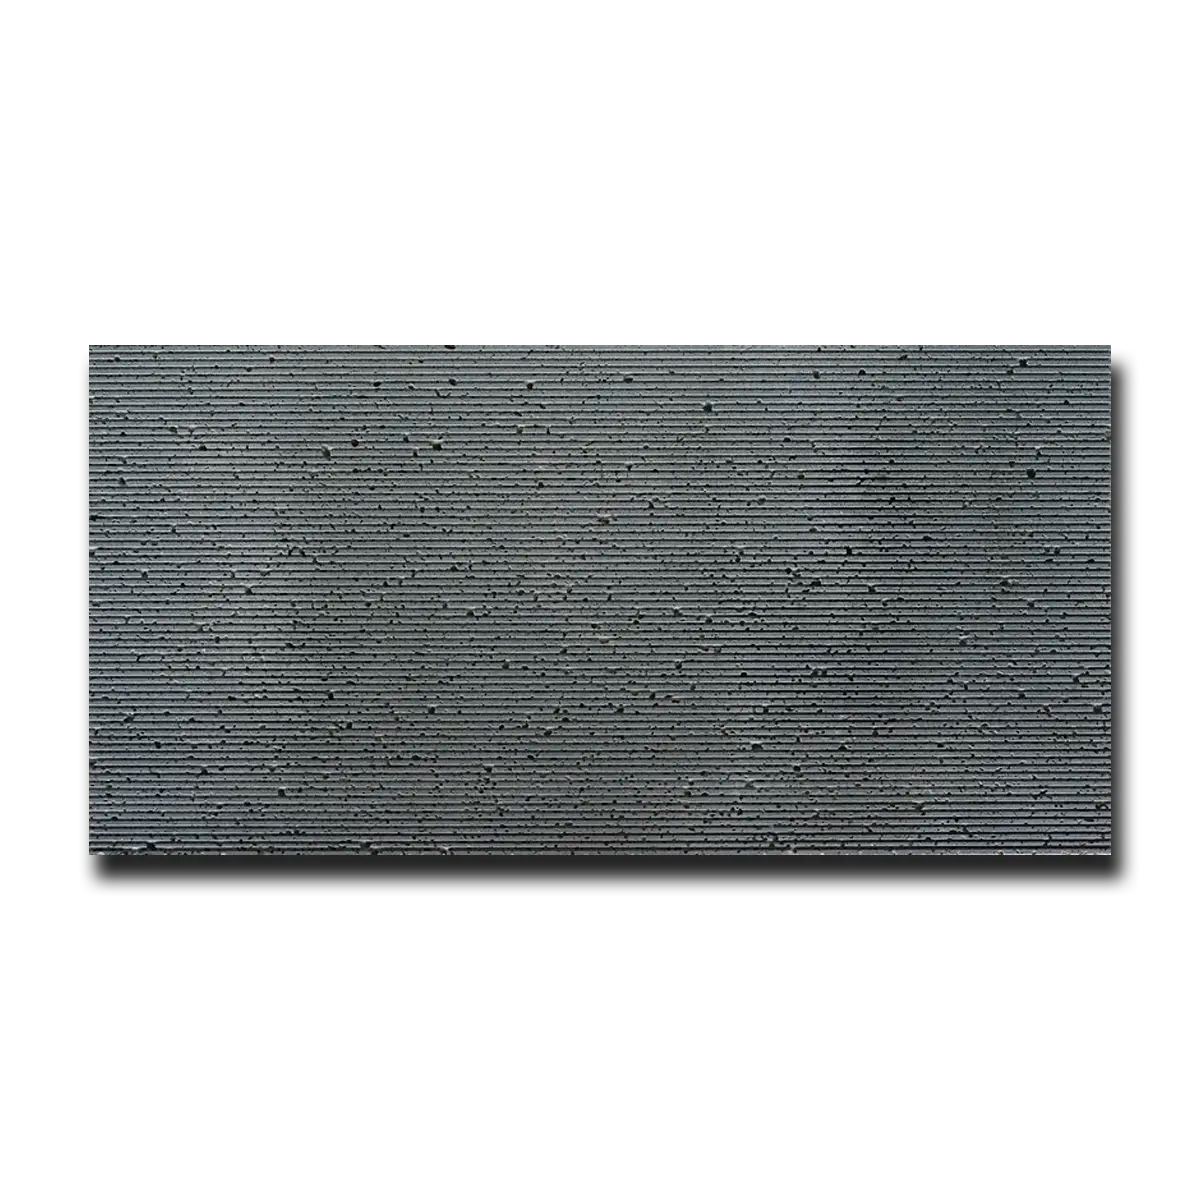 Gray Lava Lava Tile Honed & Wired 12" x 24" 1/2" Tile